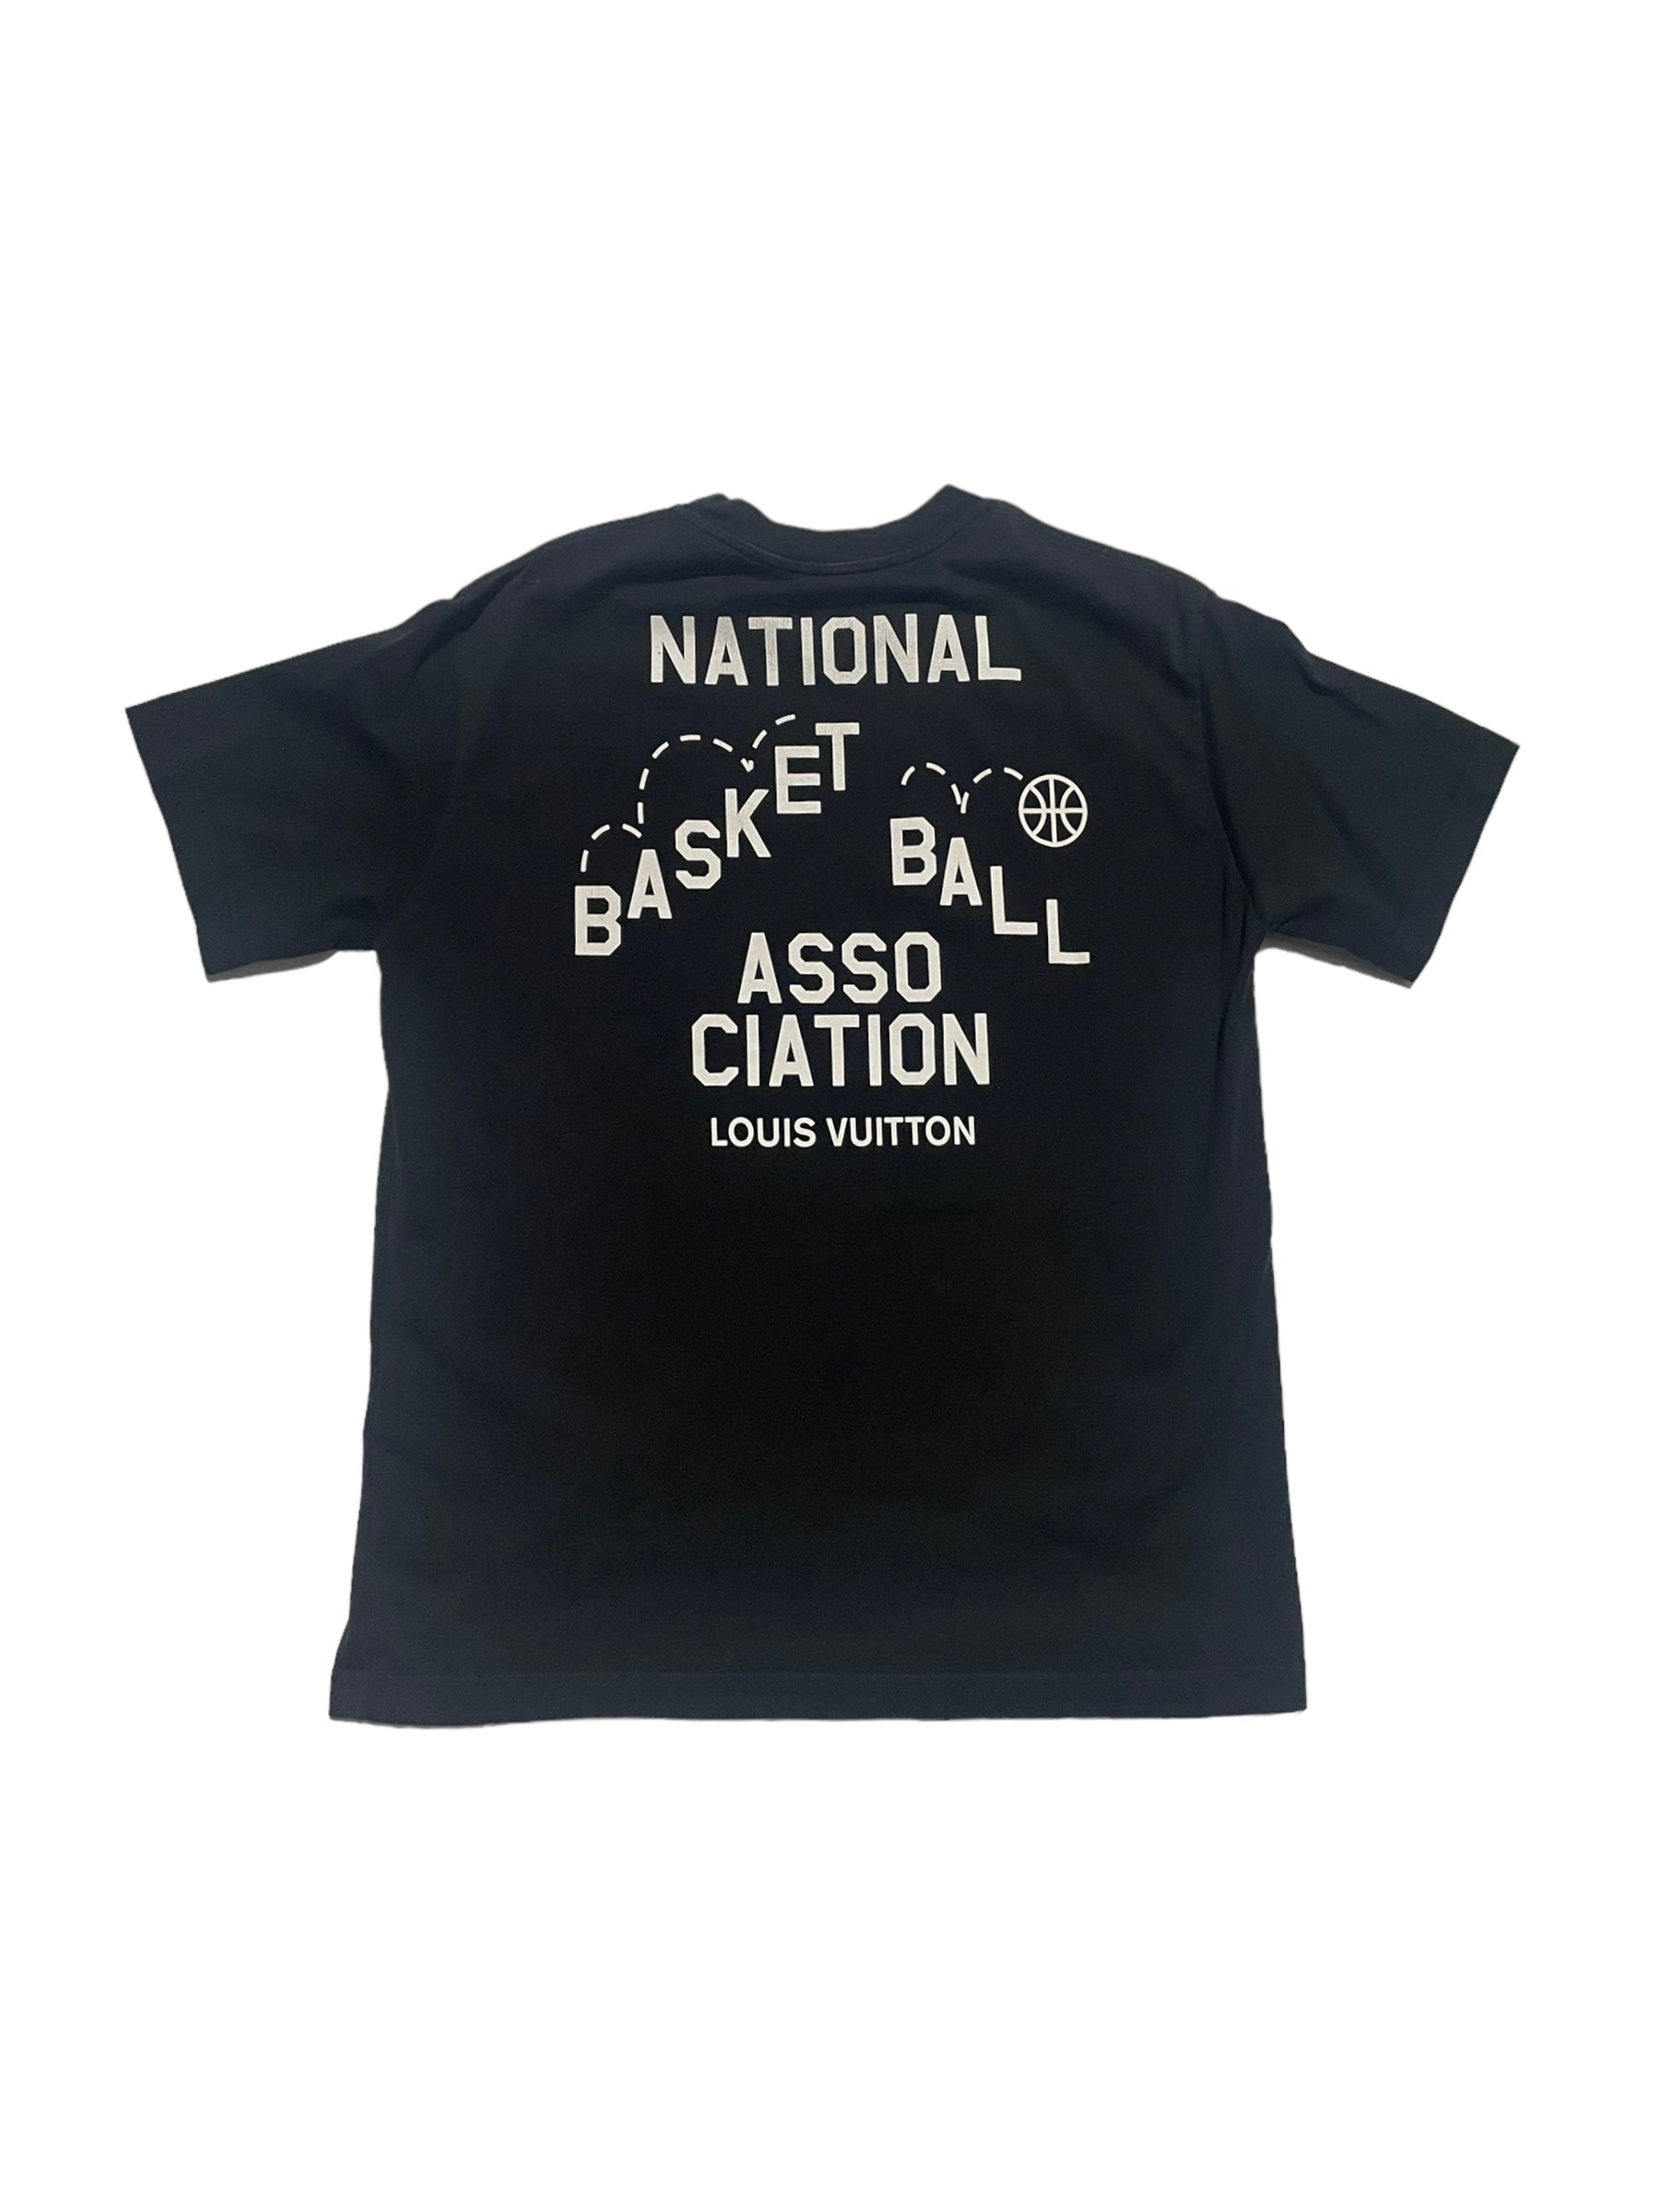 Louis Vuitton 100% Cotton T-shirt Blue Black NBA Virgil Abloh Size